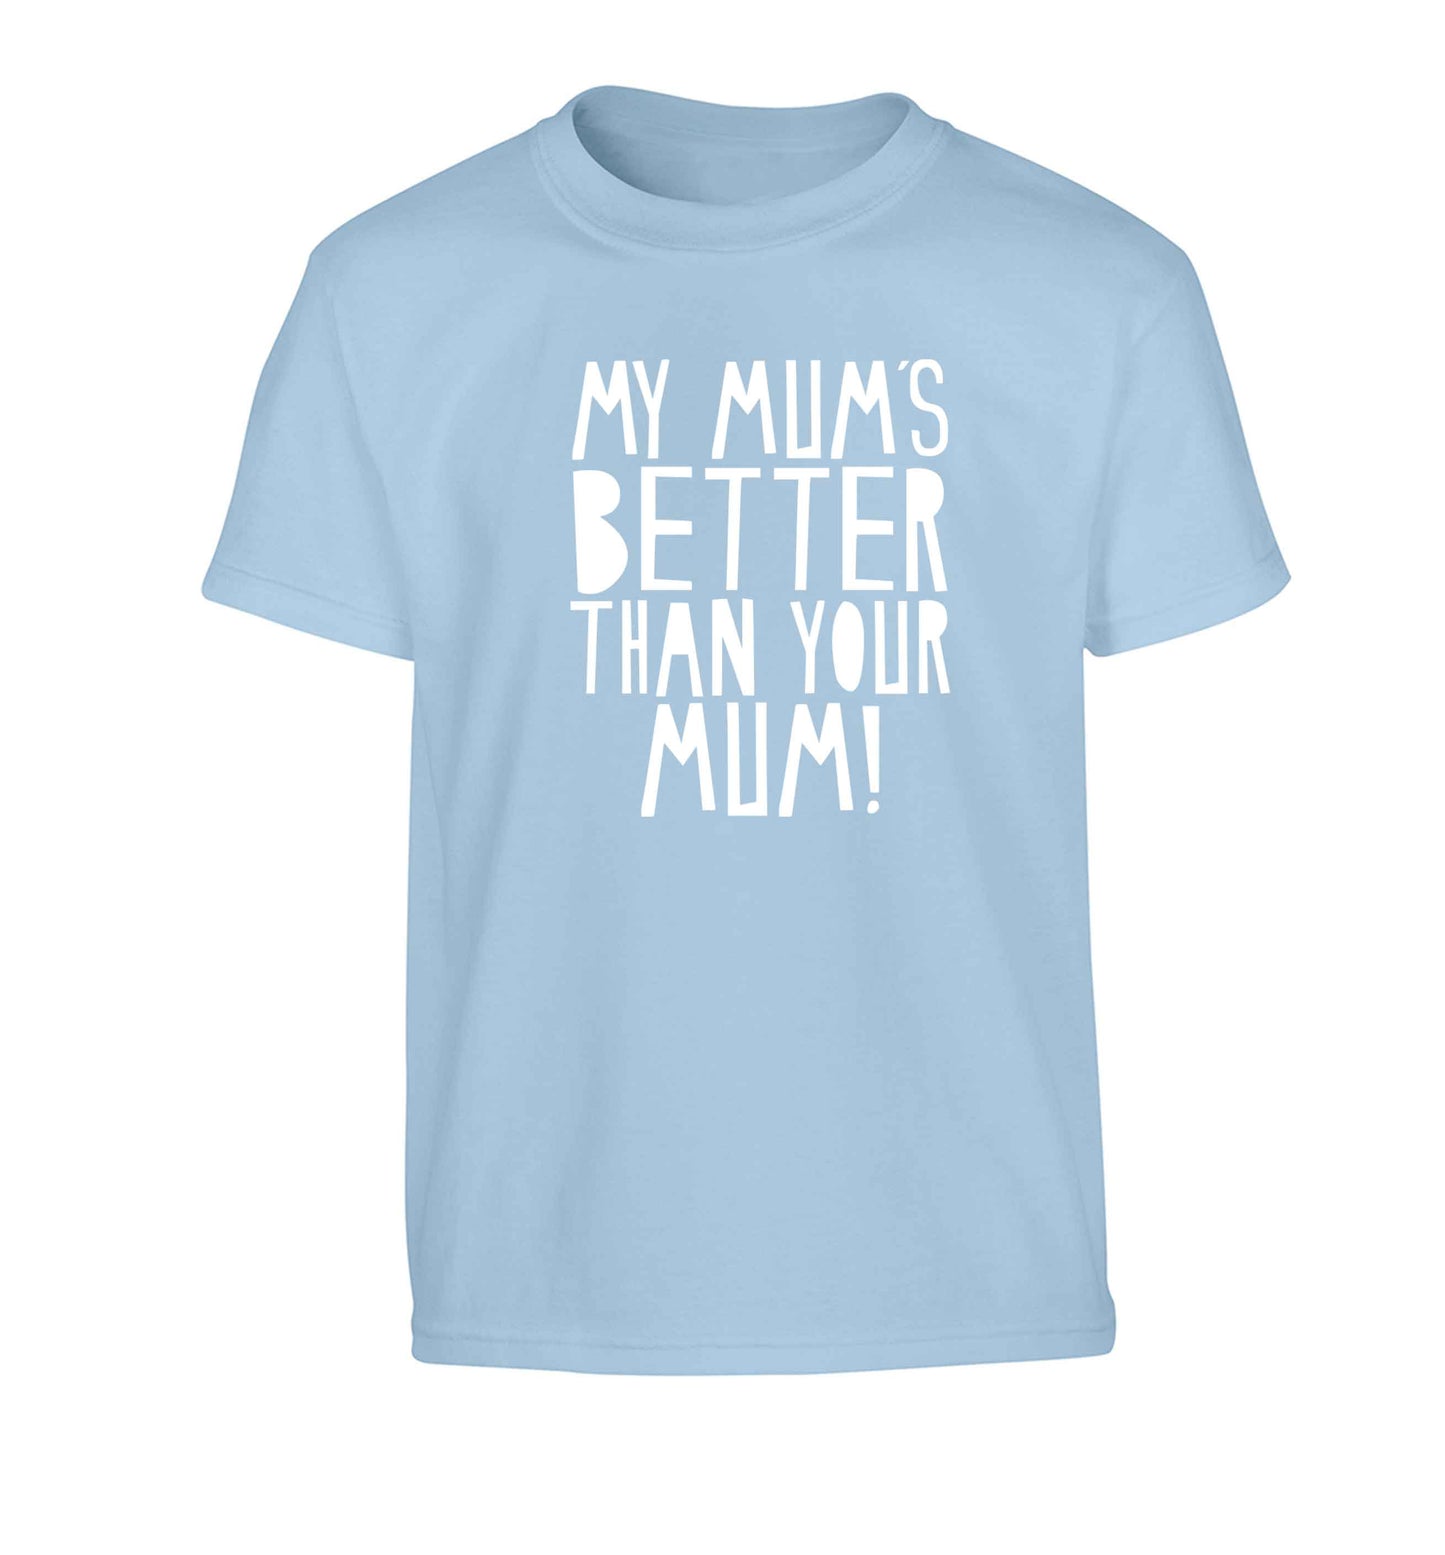 My mum's better than your mum Children's light blue Tshirt 12-13 Years